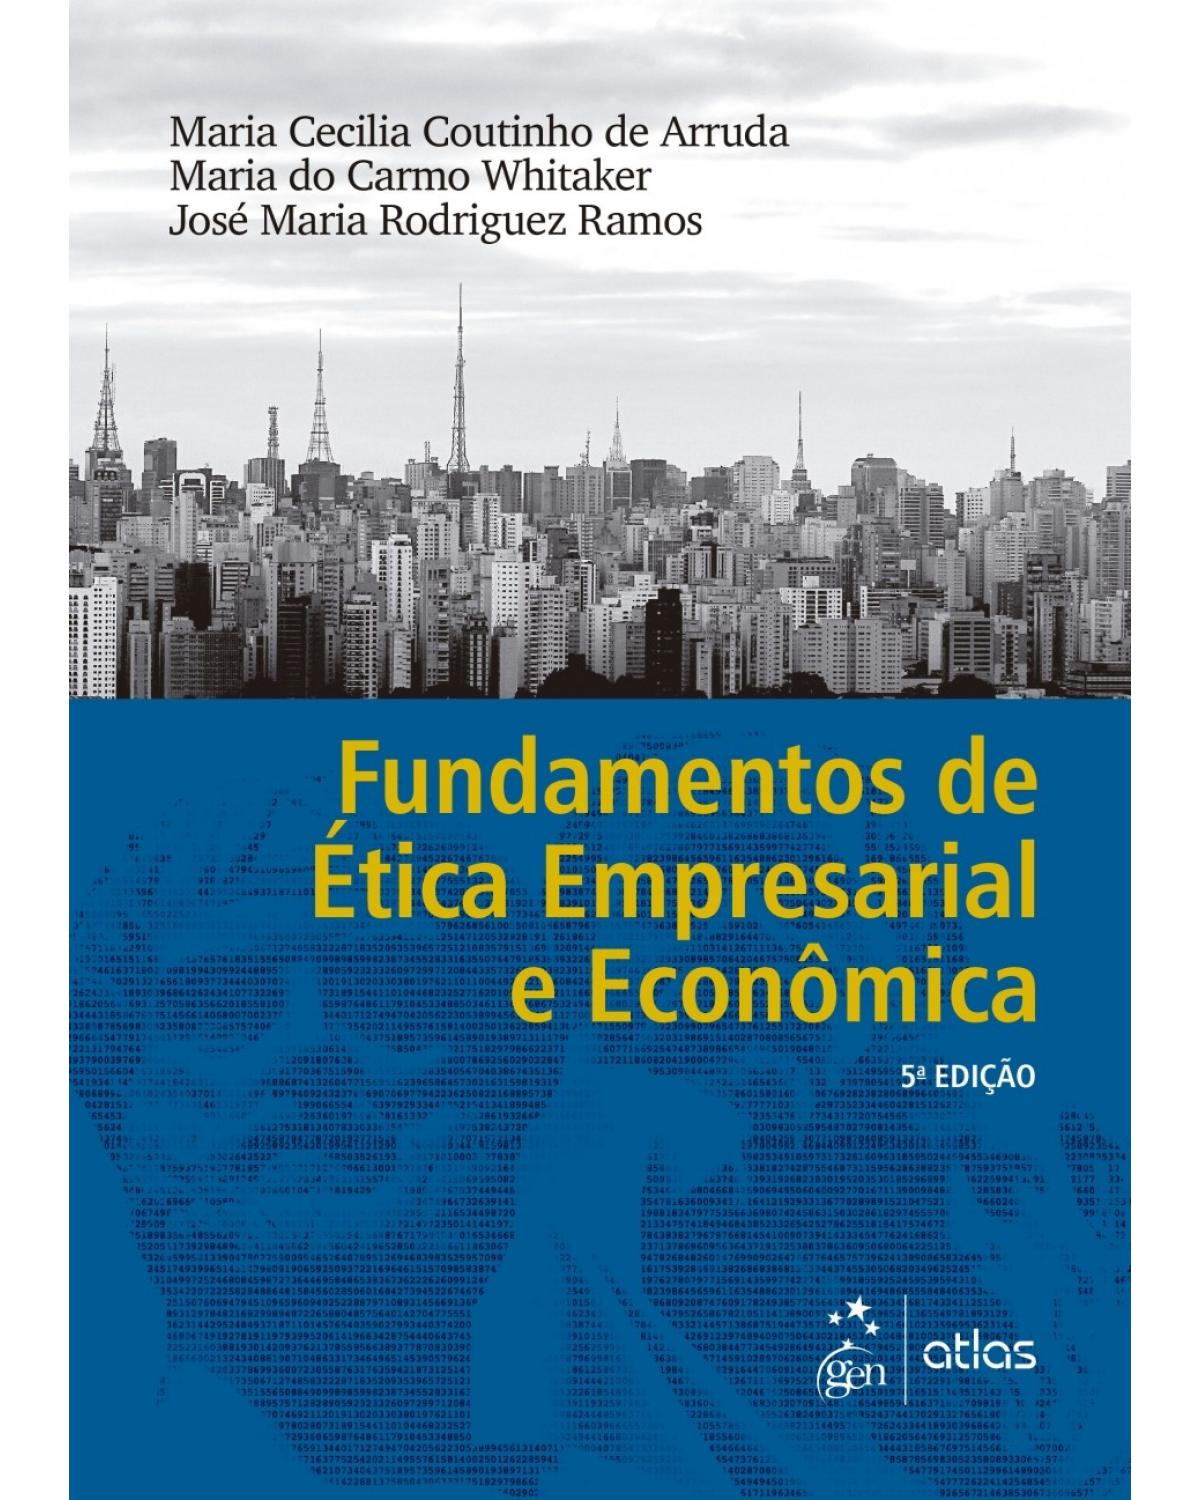 Fundamentos de ética empresarial e econômica - 5ª Edição | 2017